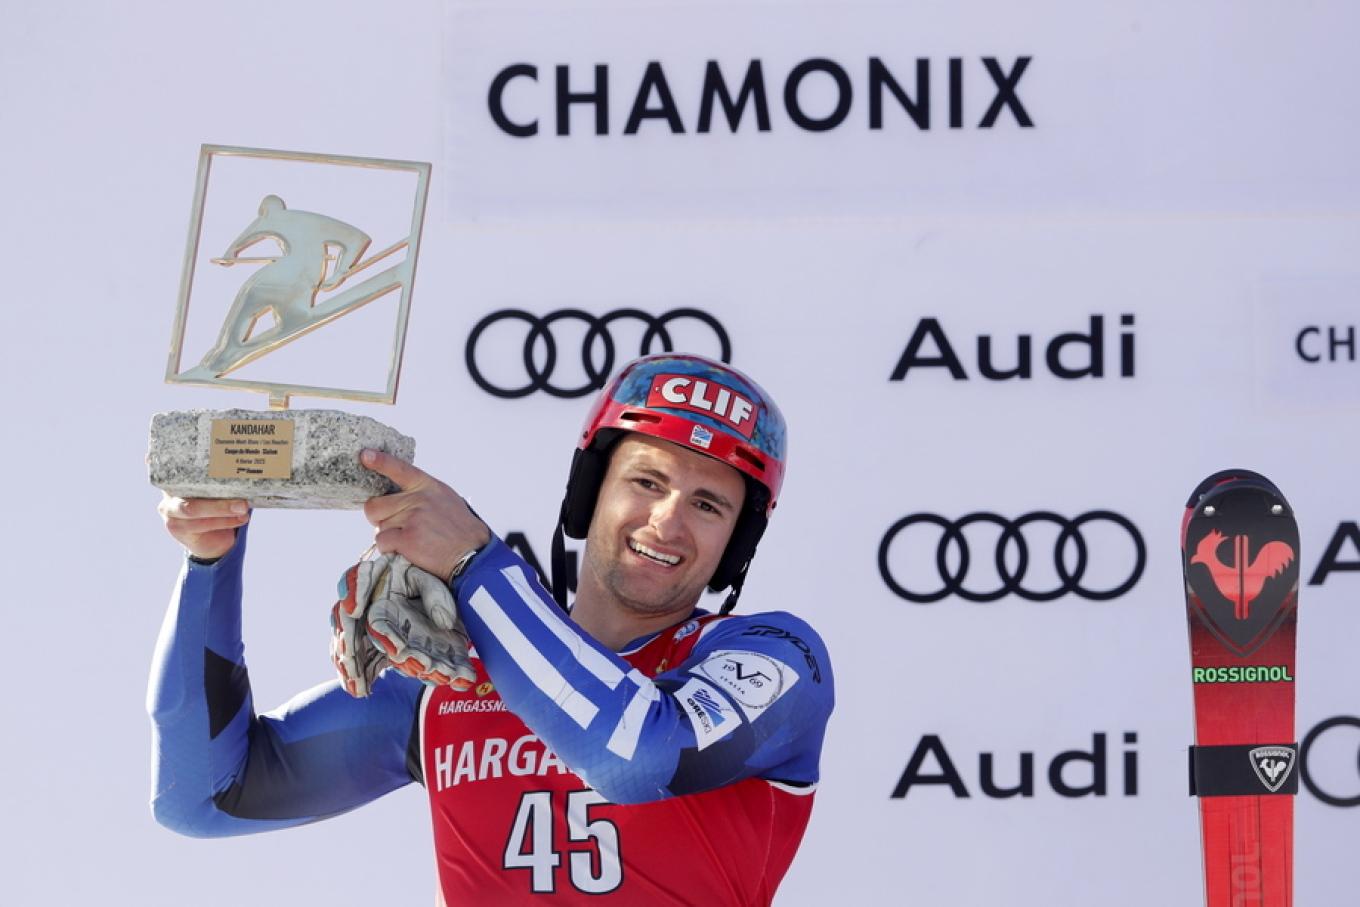 Το πρώτο μετάλλιο σε παγκόσμιο πρωτάθλημα σκι χάρισε στην Ελλάδα ο Α. Γκίνης